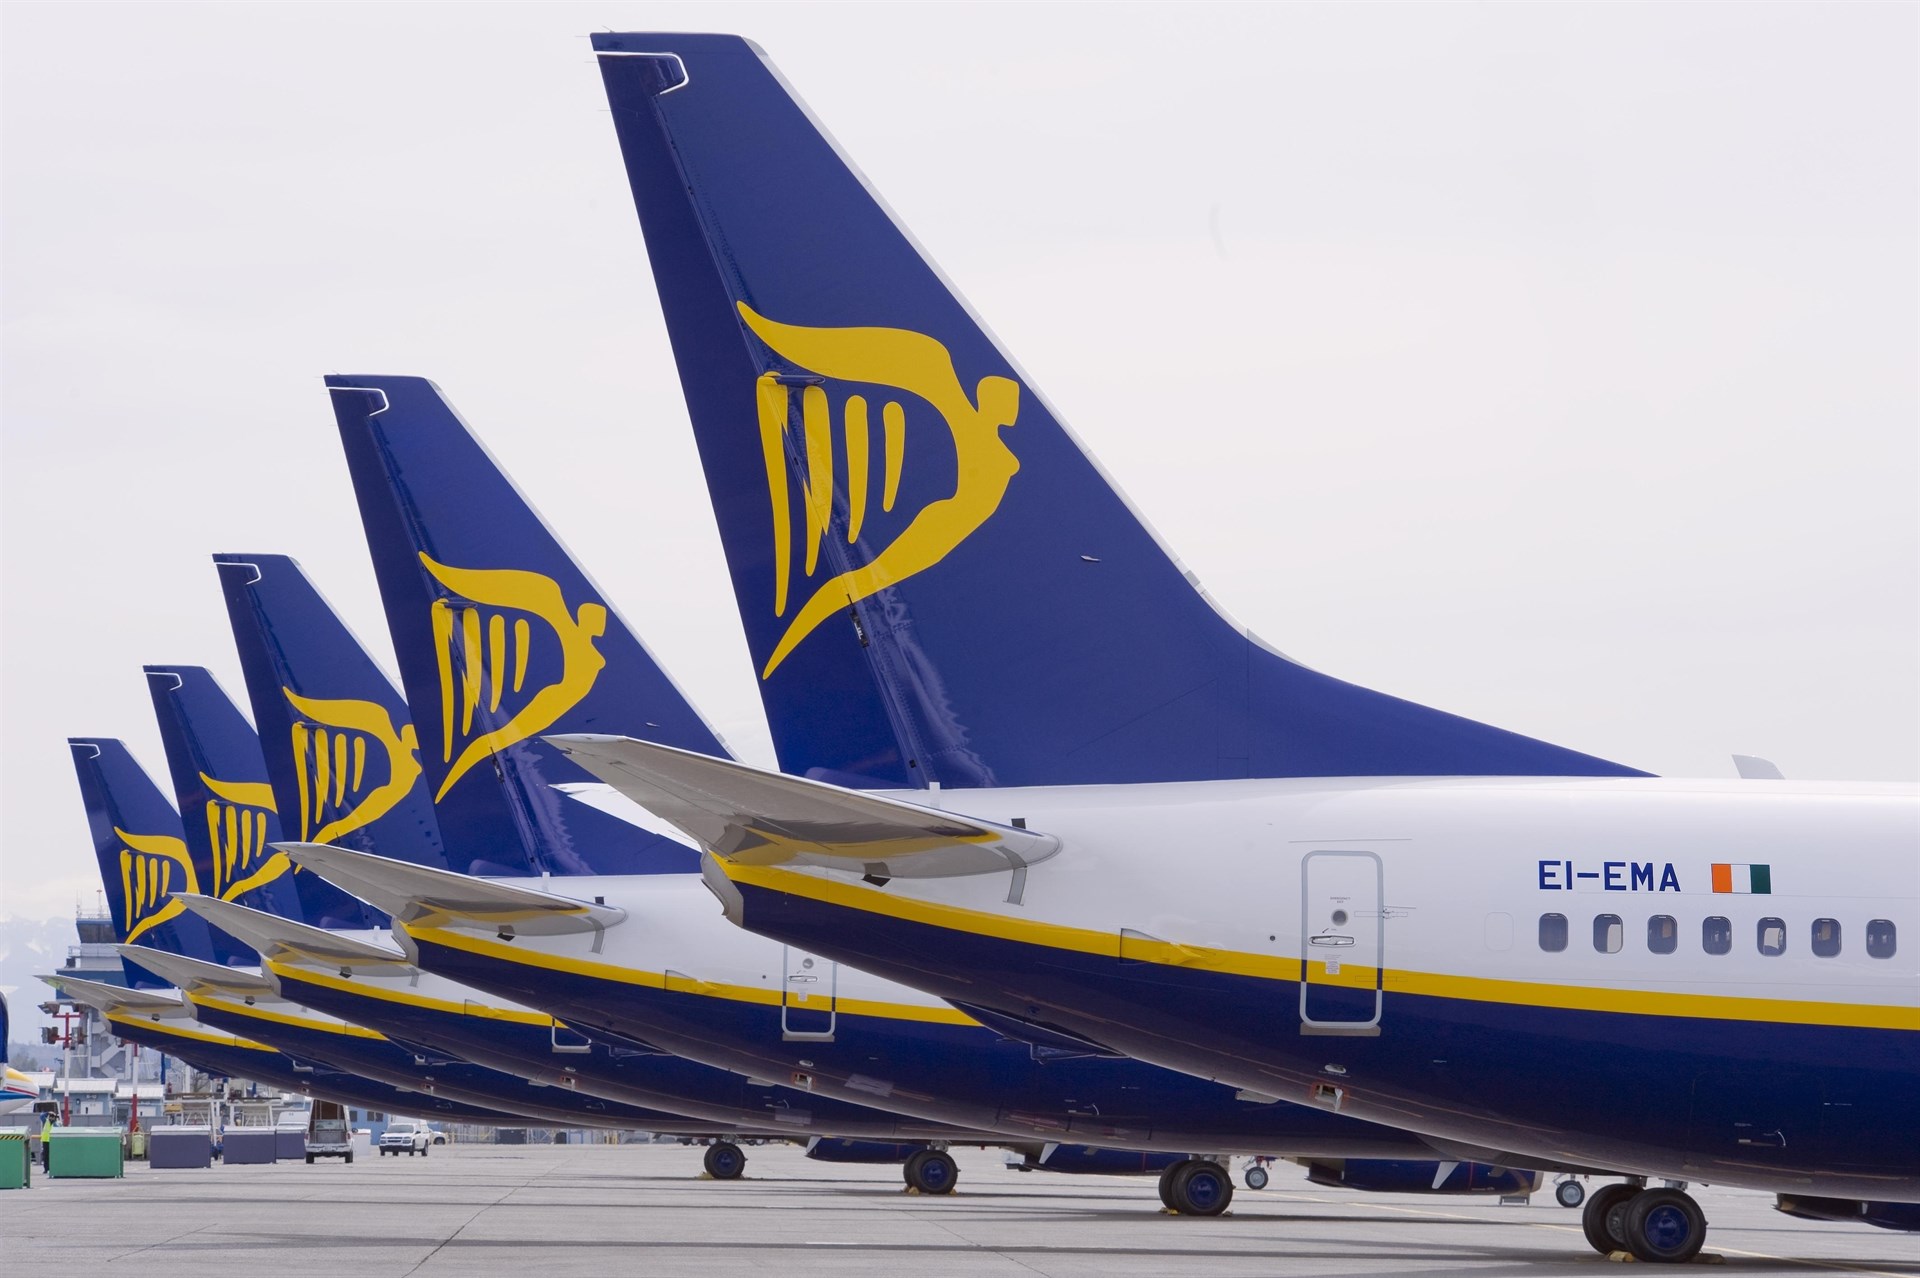 La UCCV un formulario para reclamar el de las maletas de mano Ryanair - OFFICIAL PRESS